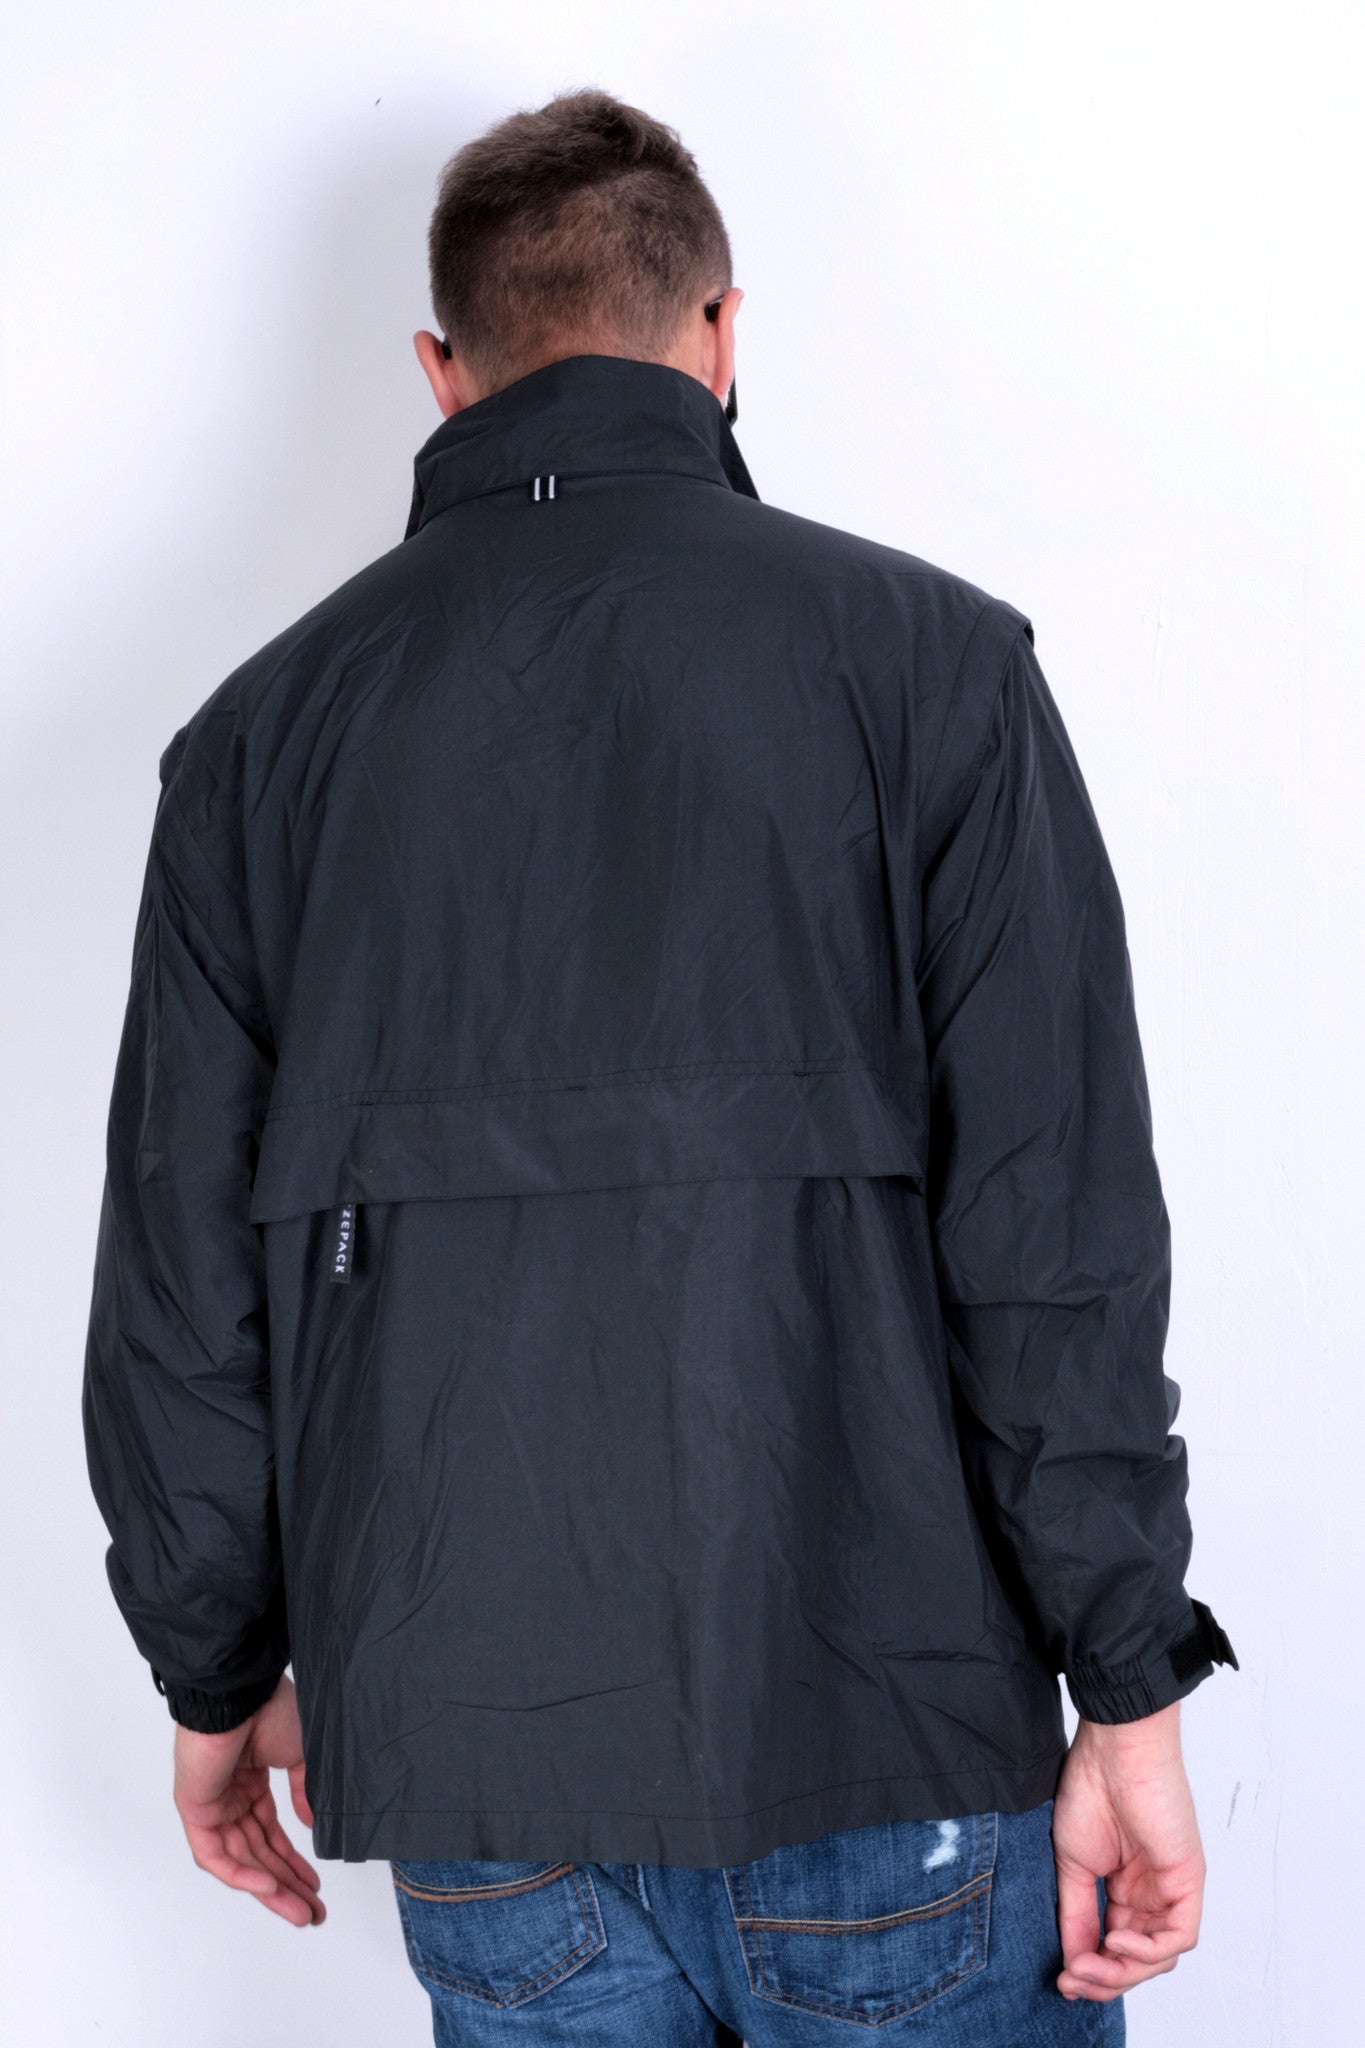 North End Mens L Jacket Full Zipper Black Waterproof - RetrospectClothes